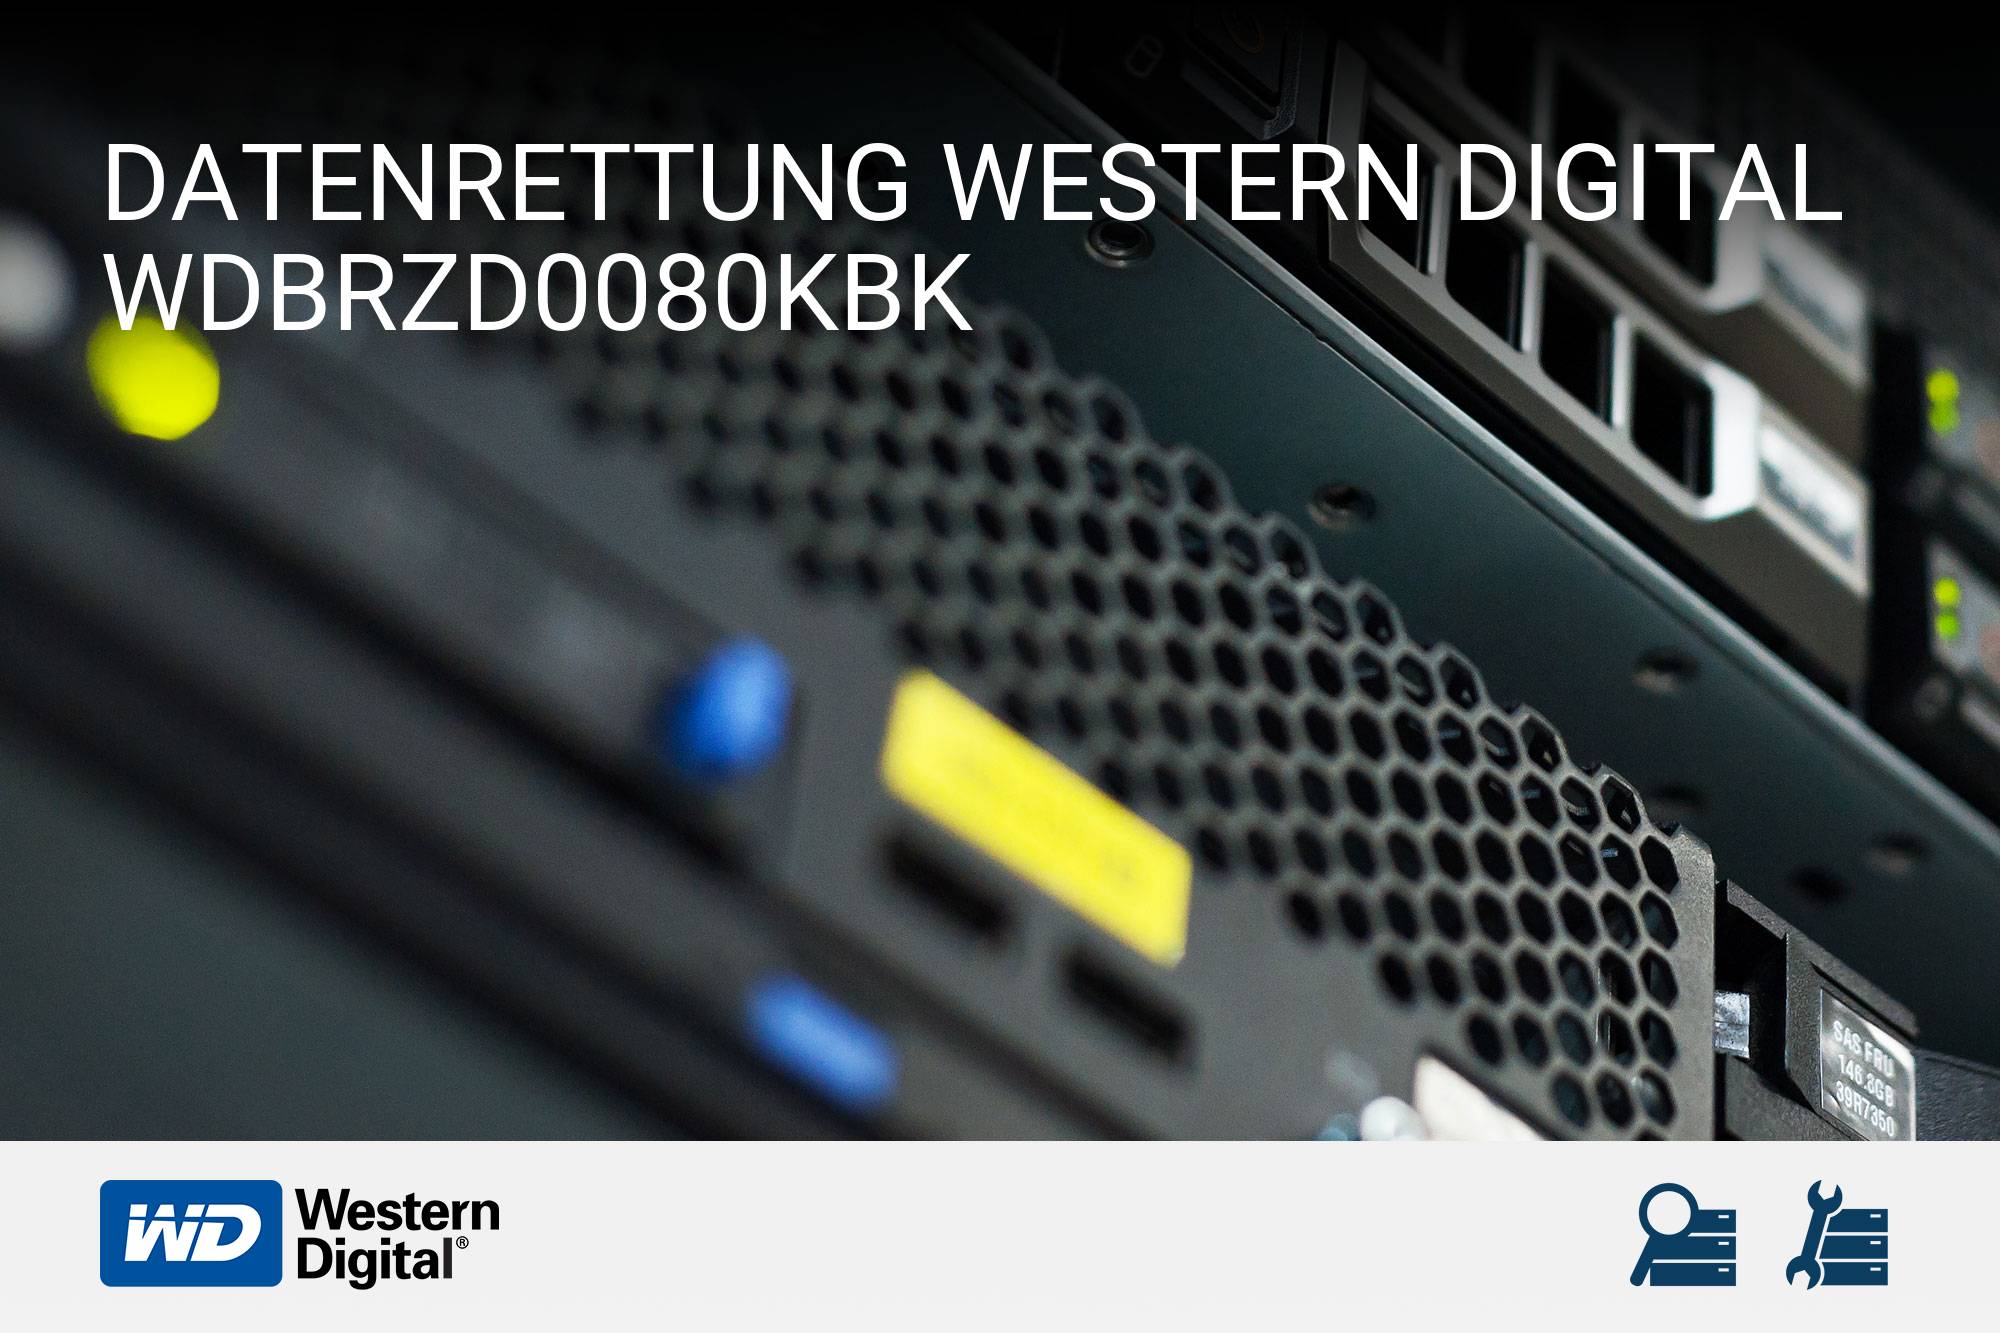 Western Digital WDBRZD0080KBK